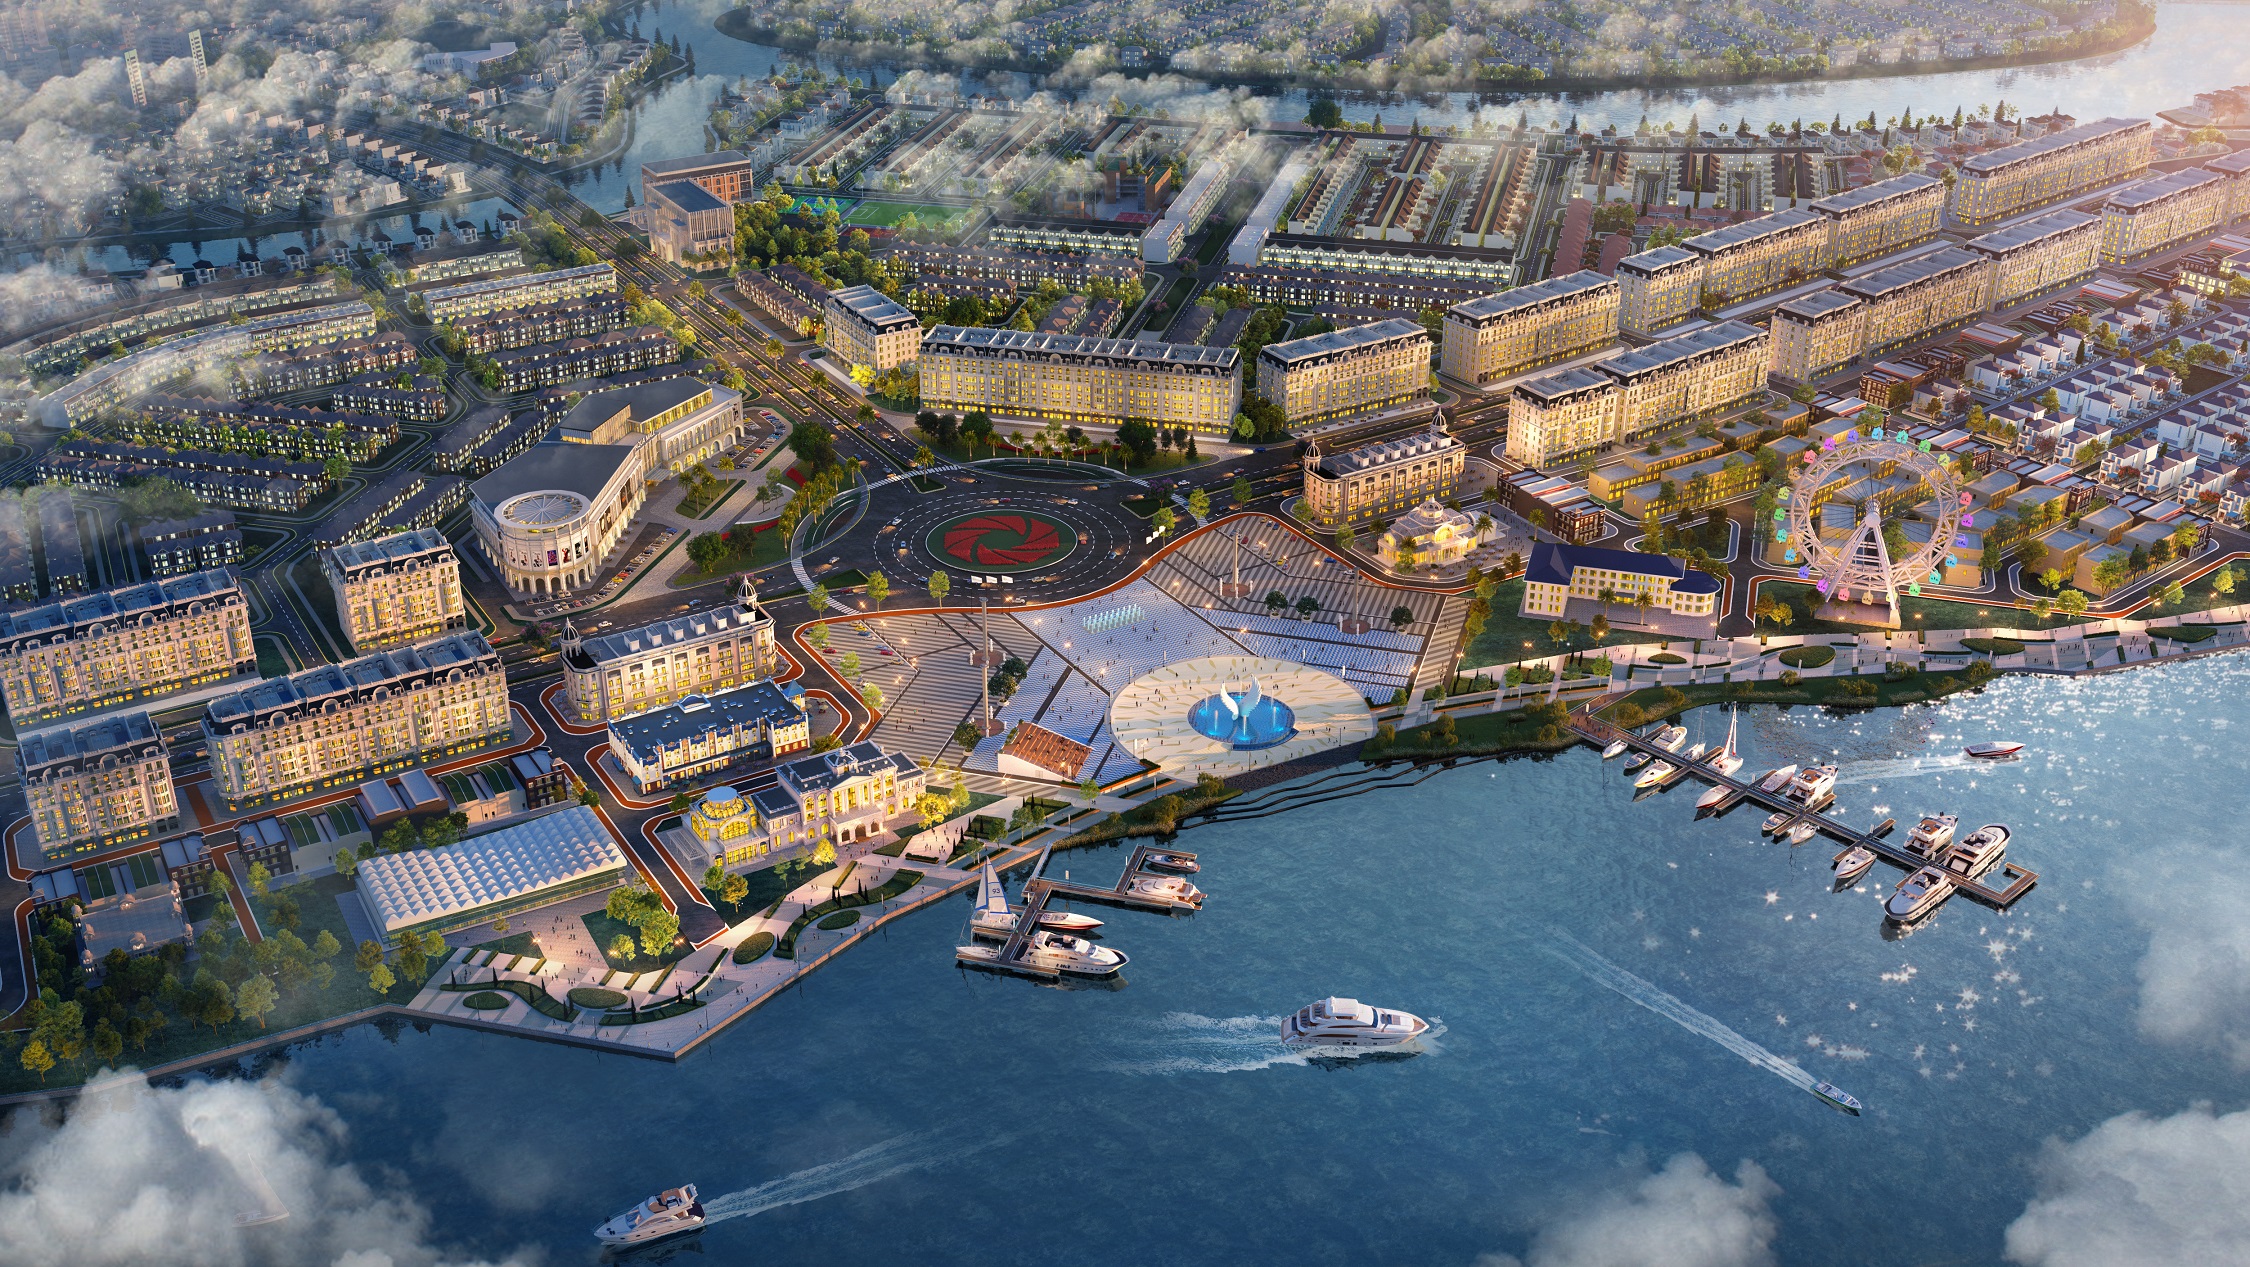 Tổ hợp quảng trường bến du thuyền Aqua Marina tại Aqua City dự kiến hoàn thiện vào quý 4.2021 kỳ vọng sẽ là điểm đến hấp dẫn và gia tăng trị BĐS nơi đây.